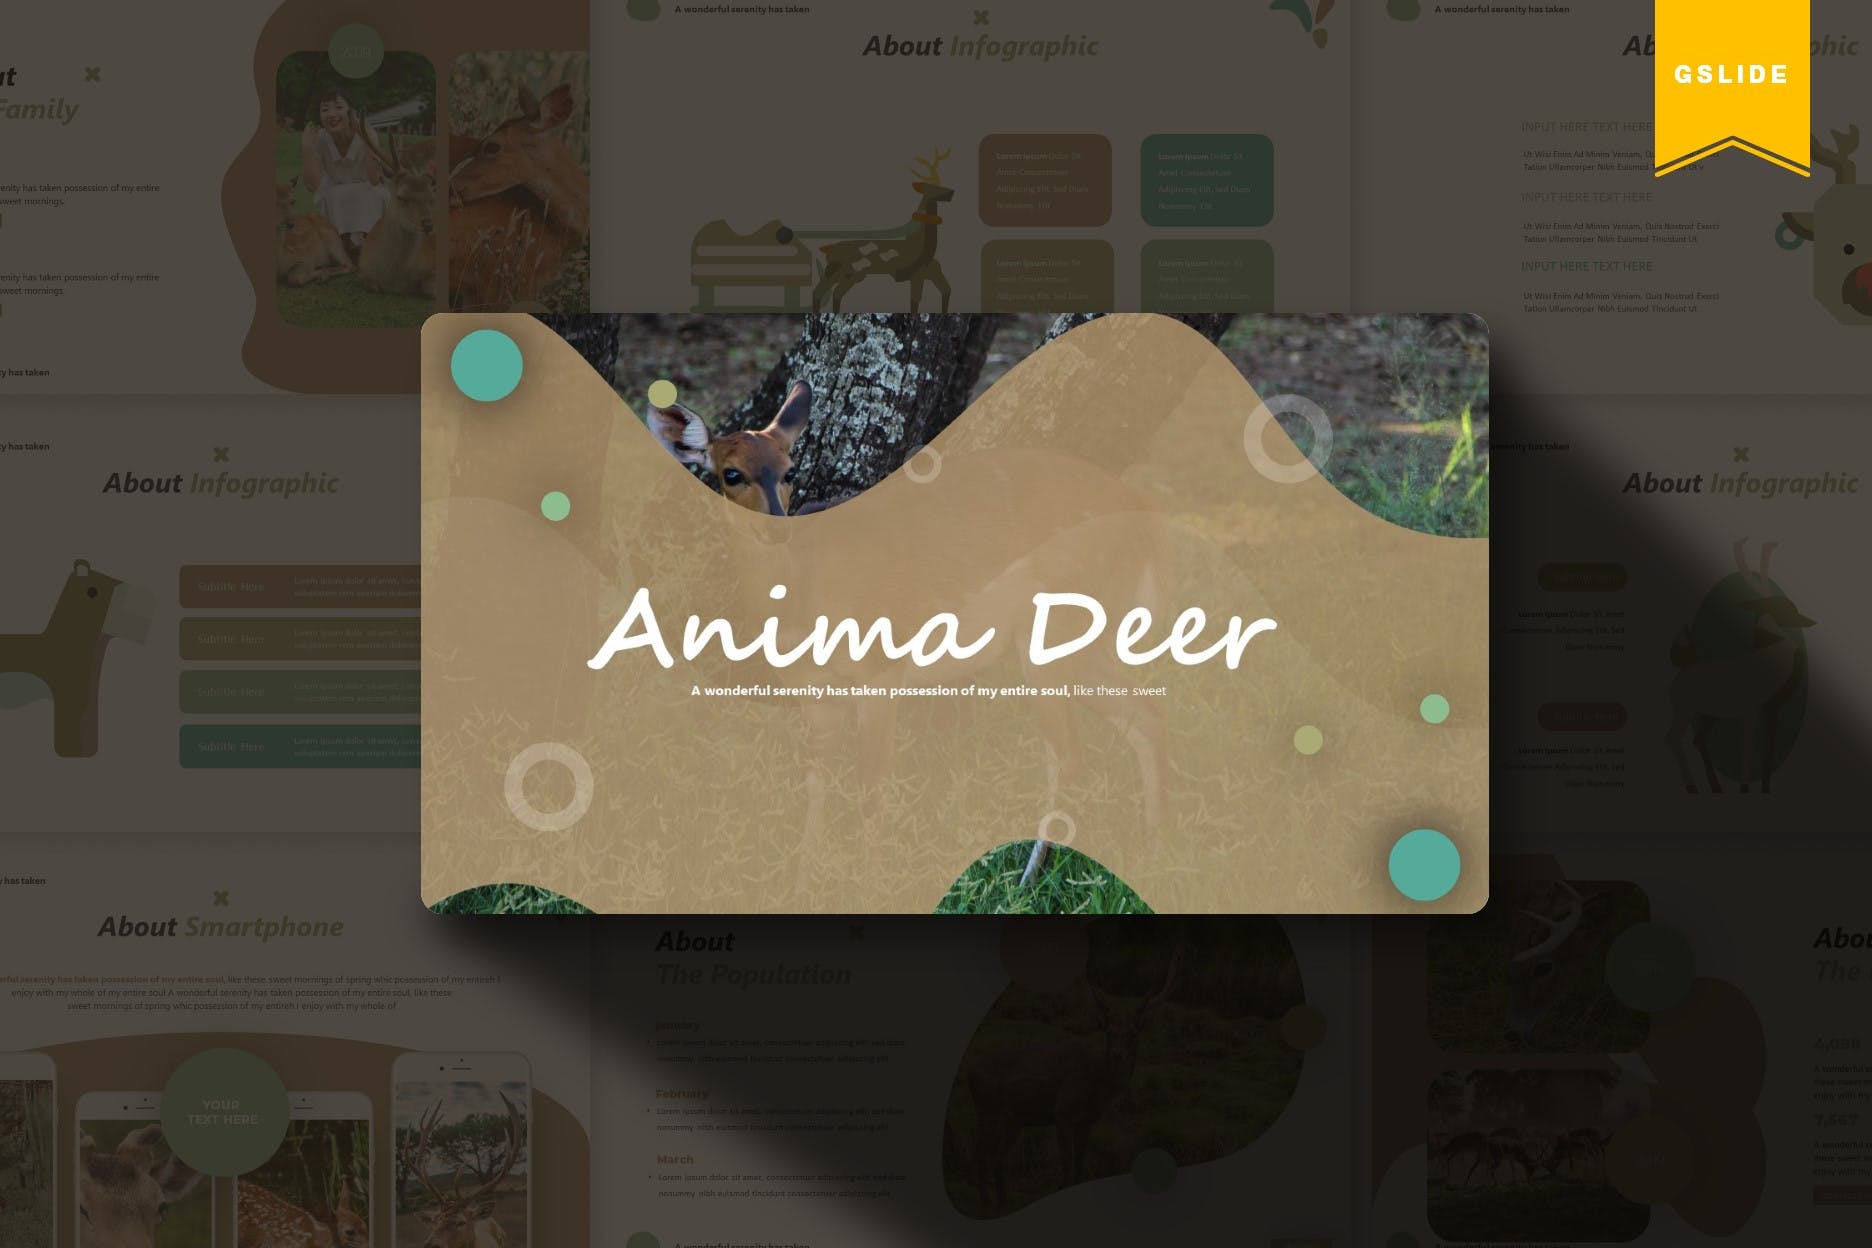 卡通小鹿儿童主题素材库精选谷歌演示模板 Anima Deer | Google Slides Template插图